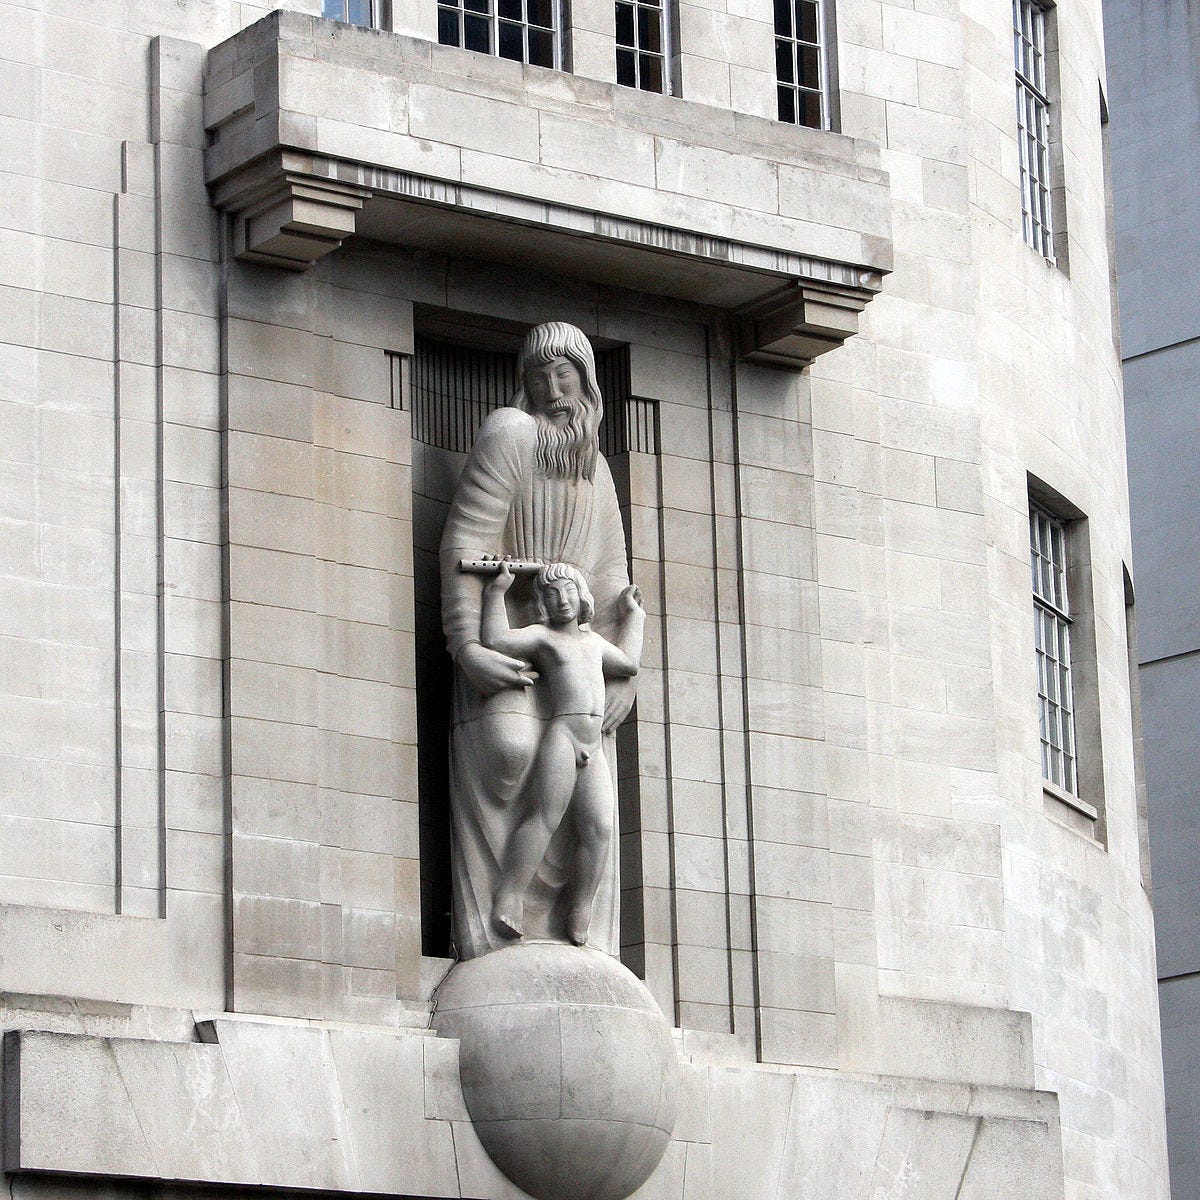 “Prospero e Ariel”, estátua de Eric Gill situada na sede de transmissão da BBC, em Londres.